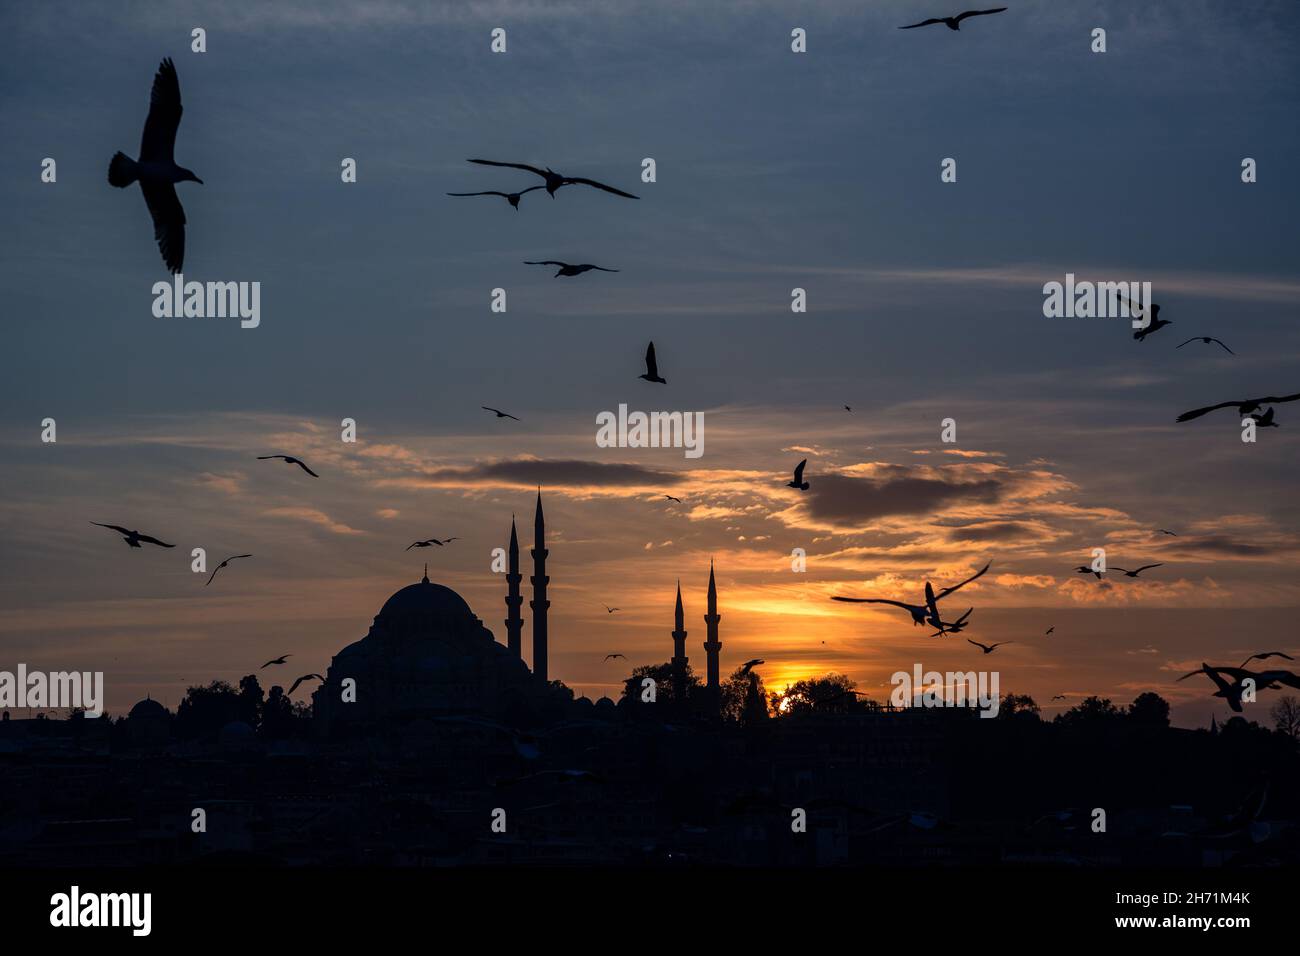 Silueta de la histórica mezquita de Suleymaniye durante la puesta de sol en la ciudad de Estambul Foto de stock